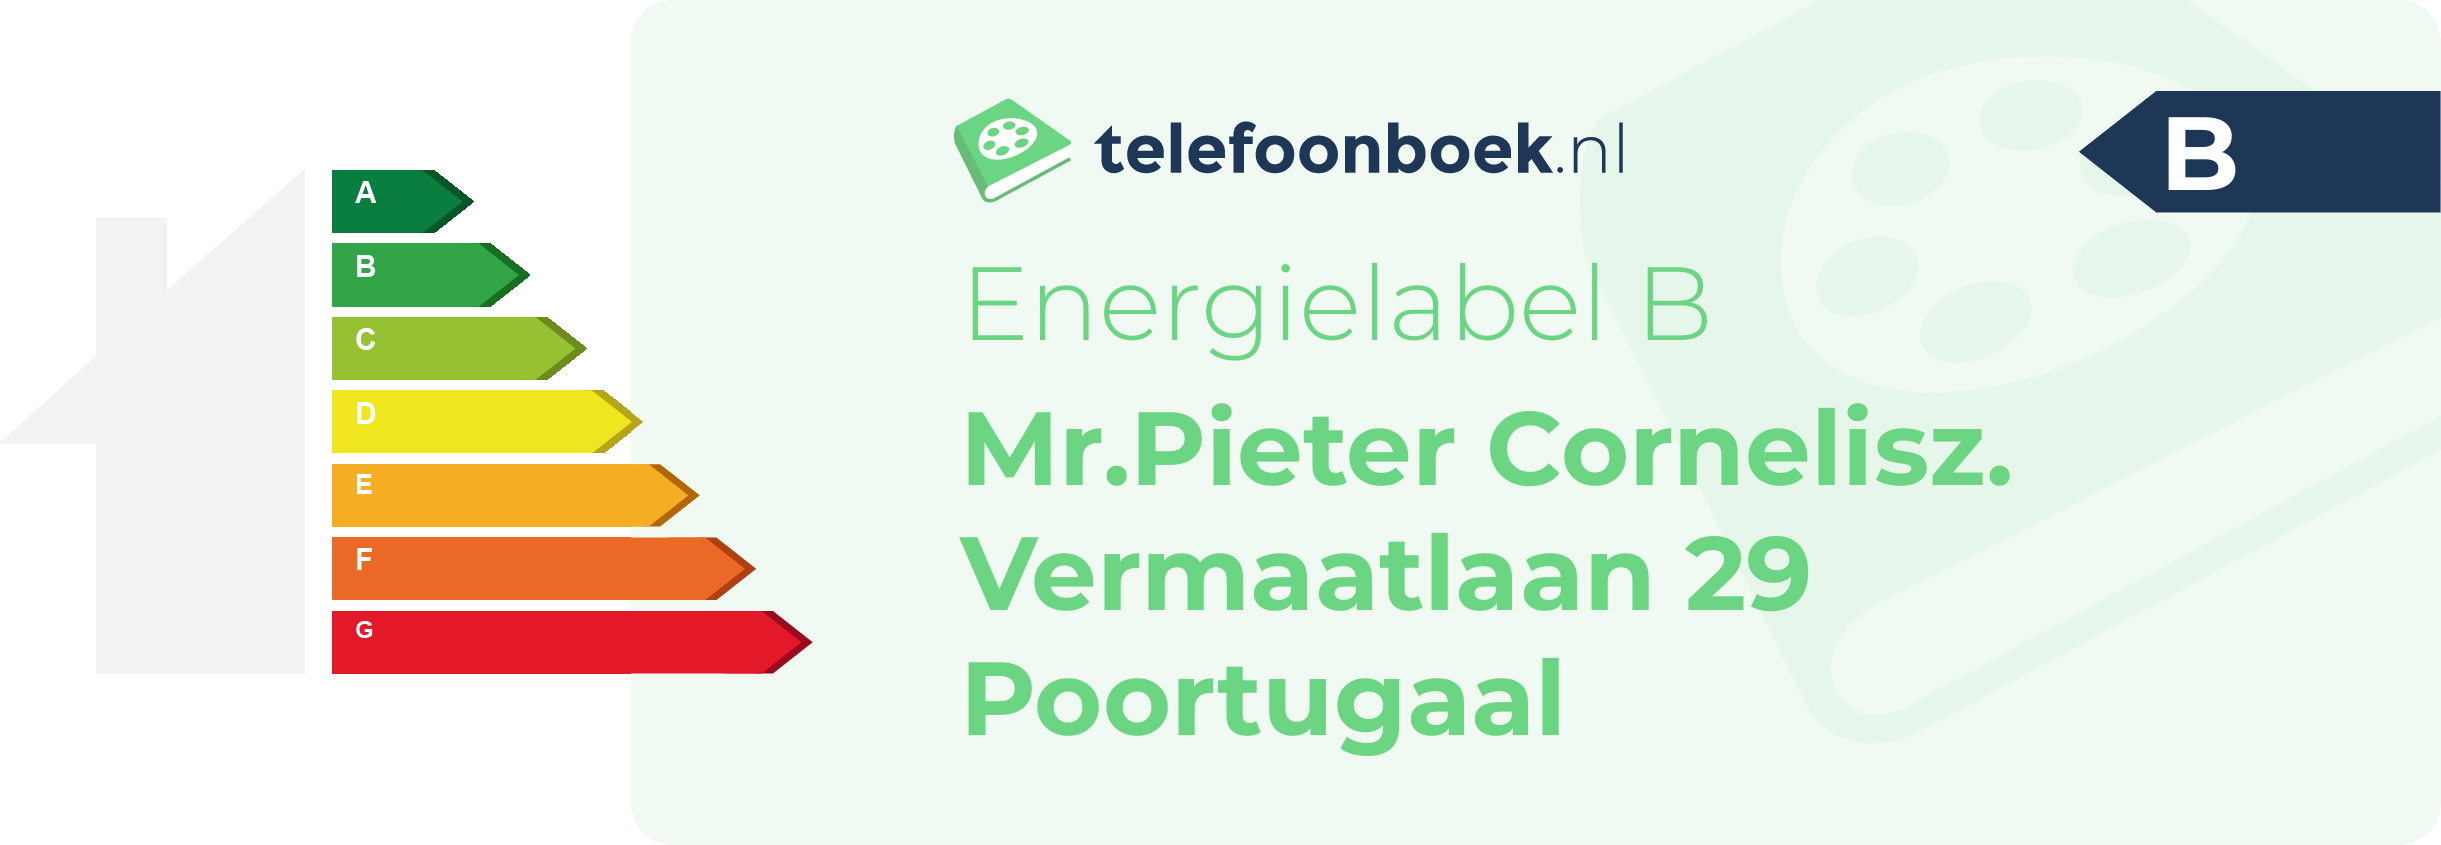 Energielabel Mr.Pieter Cornelisz. Vermaatlaan 29 Poortugaal